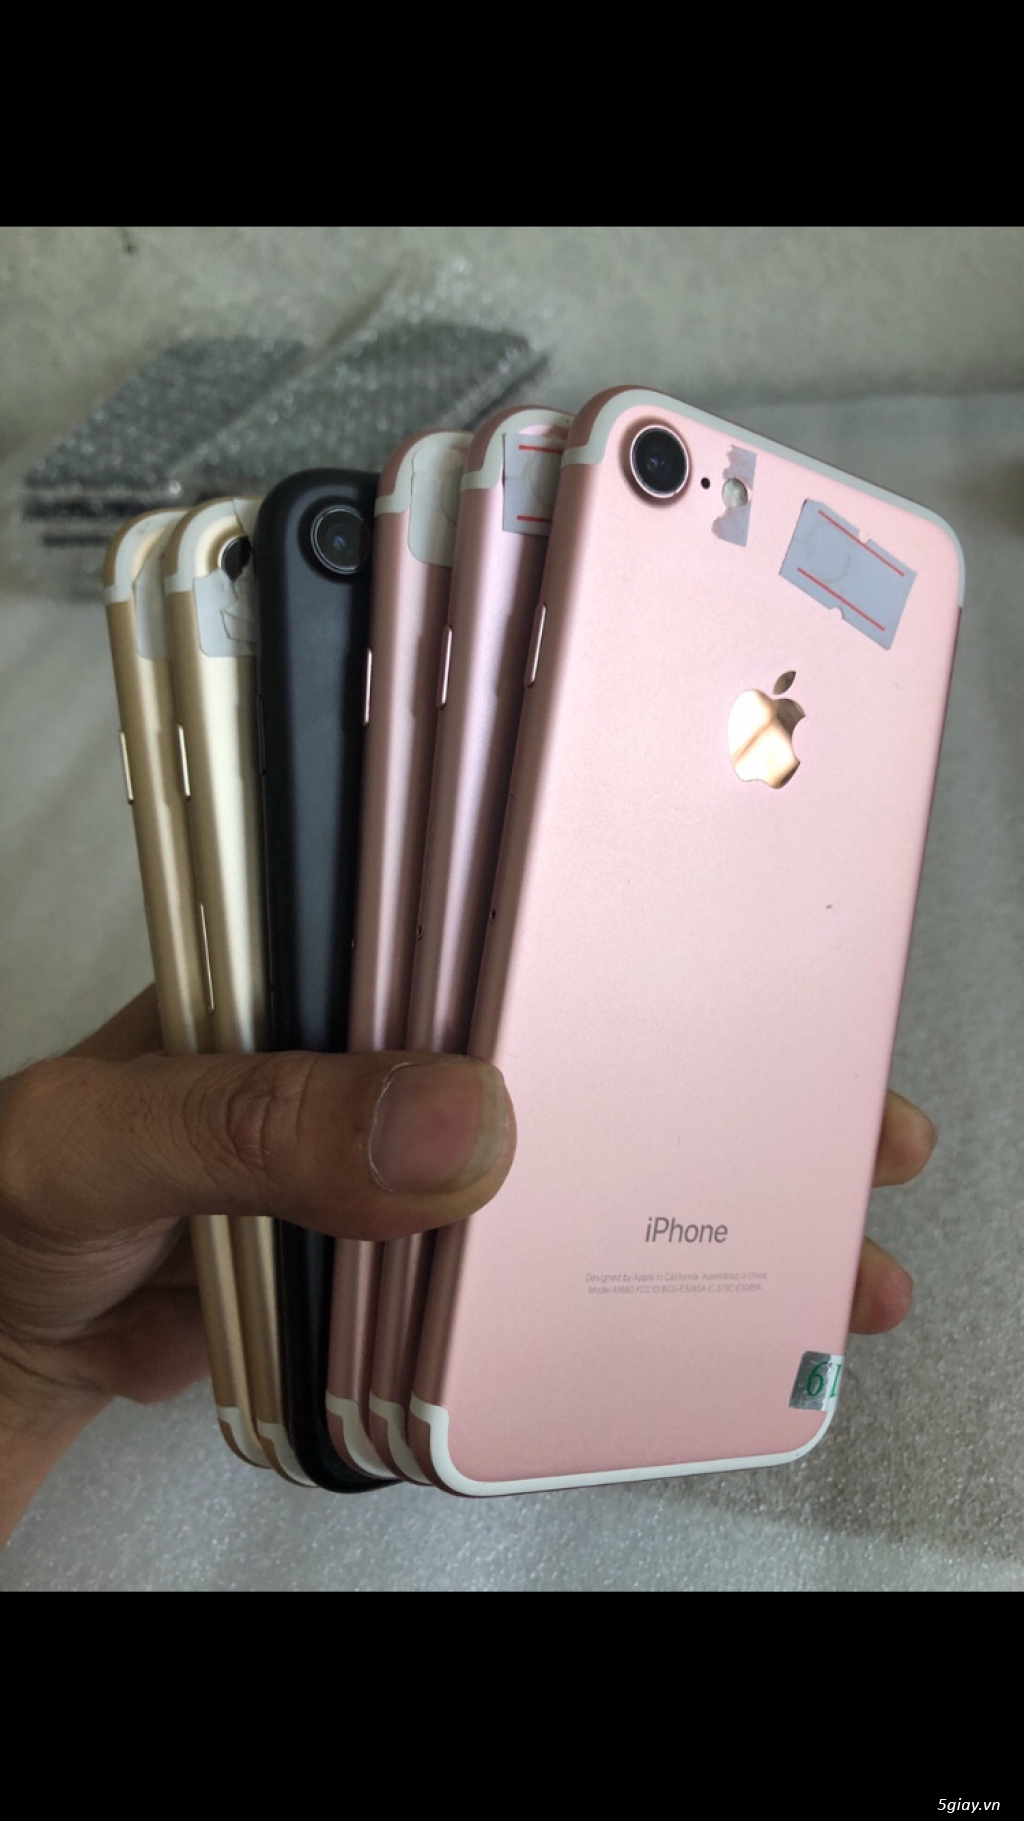 Iphone 7g32 zin áp đủ màu cho anh em - 1